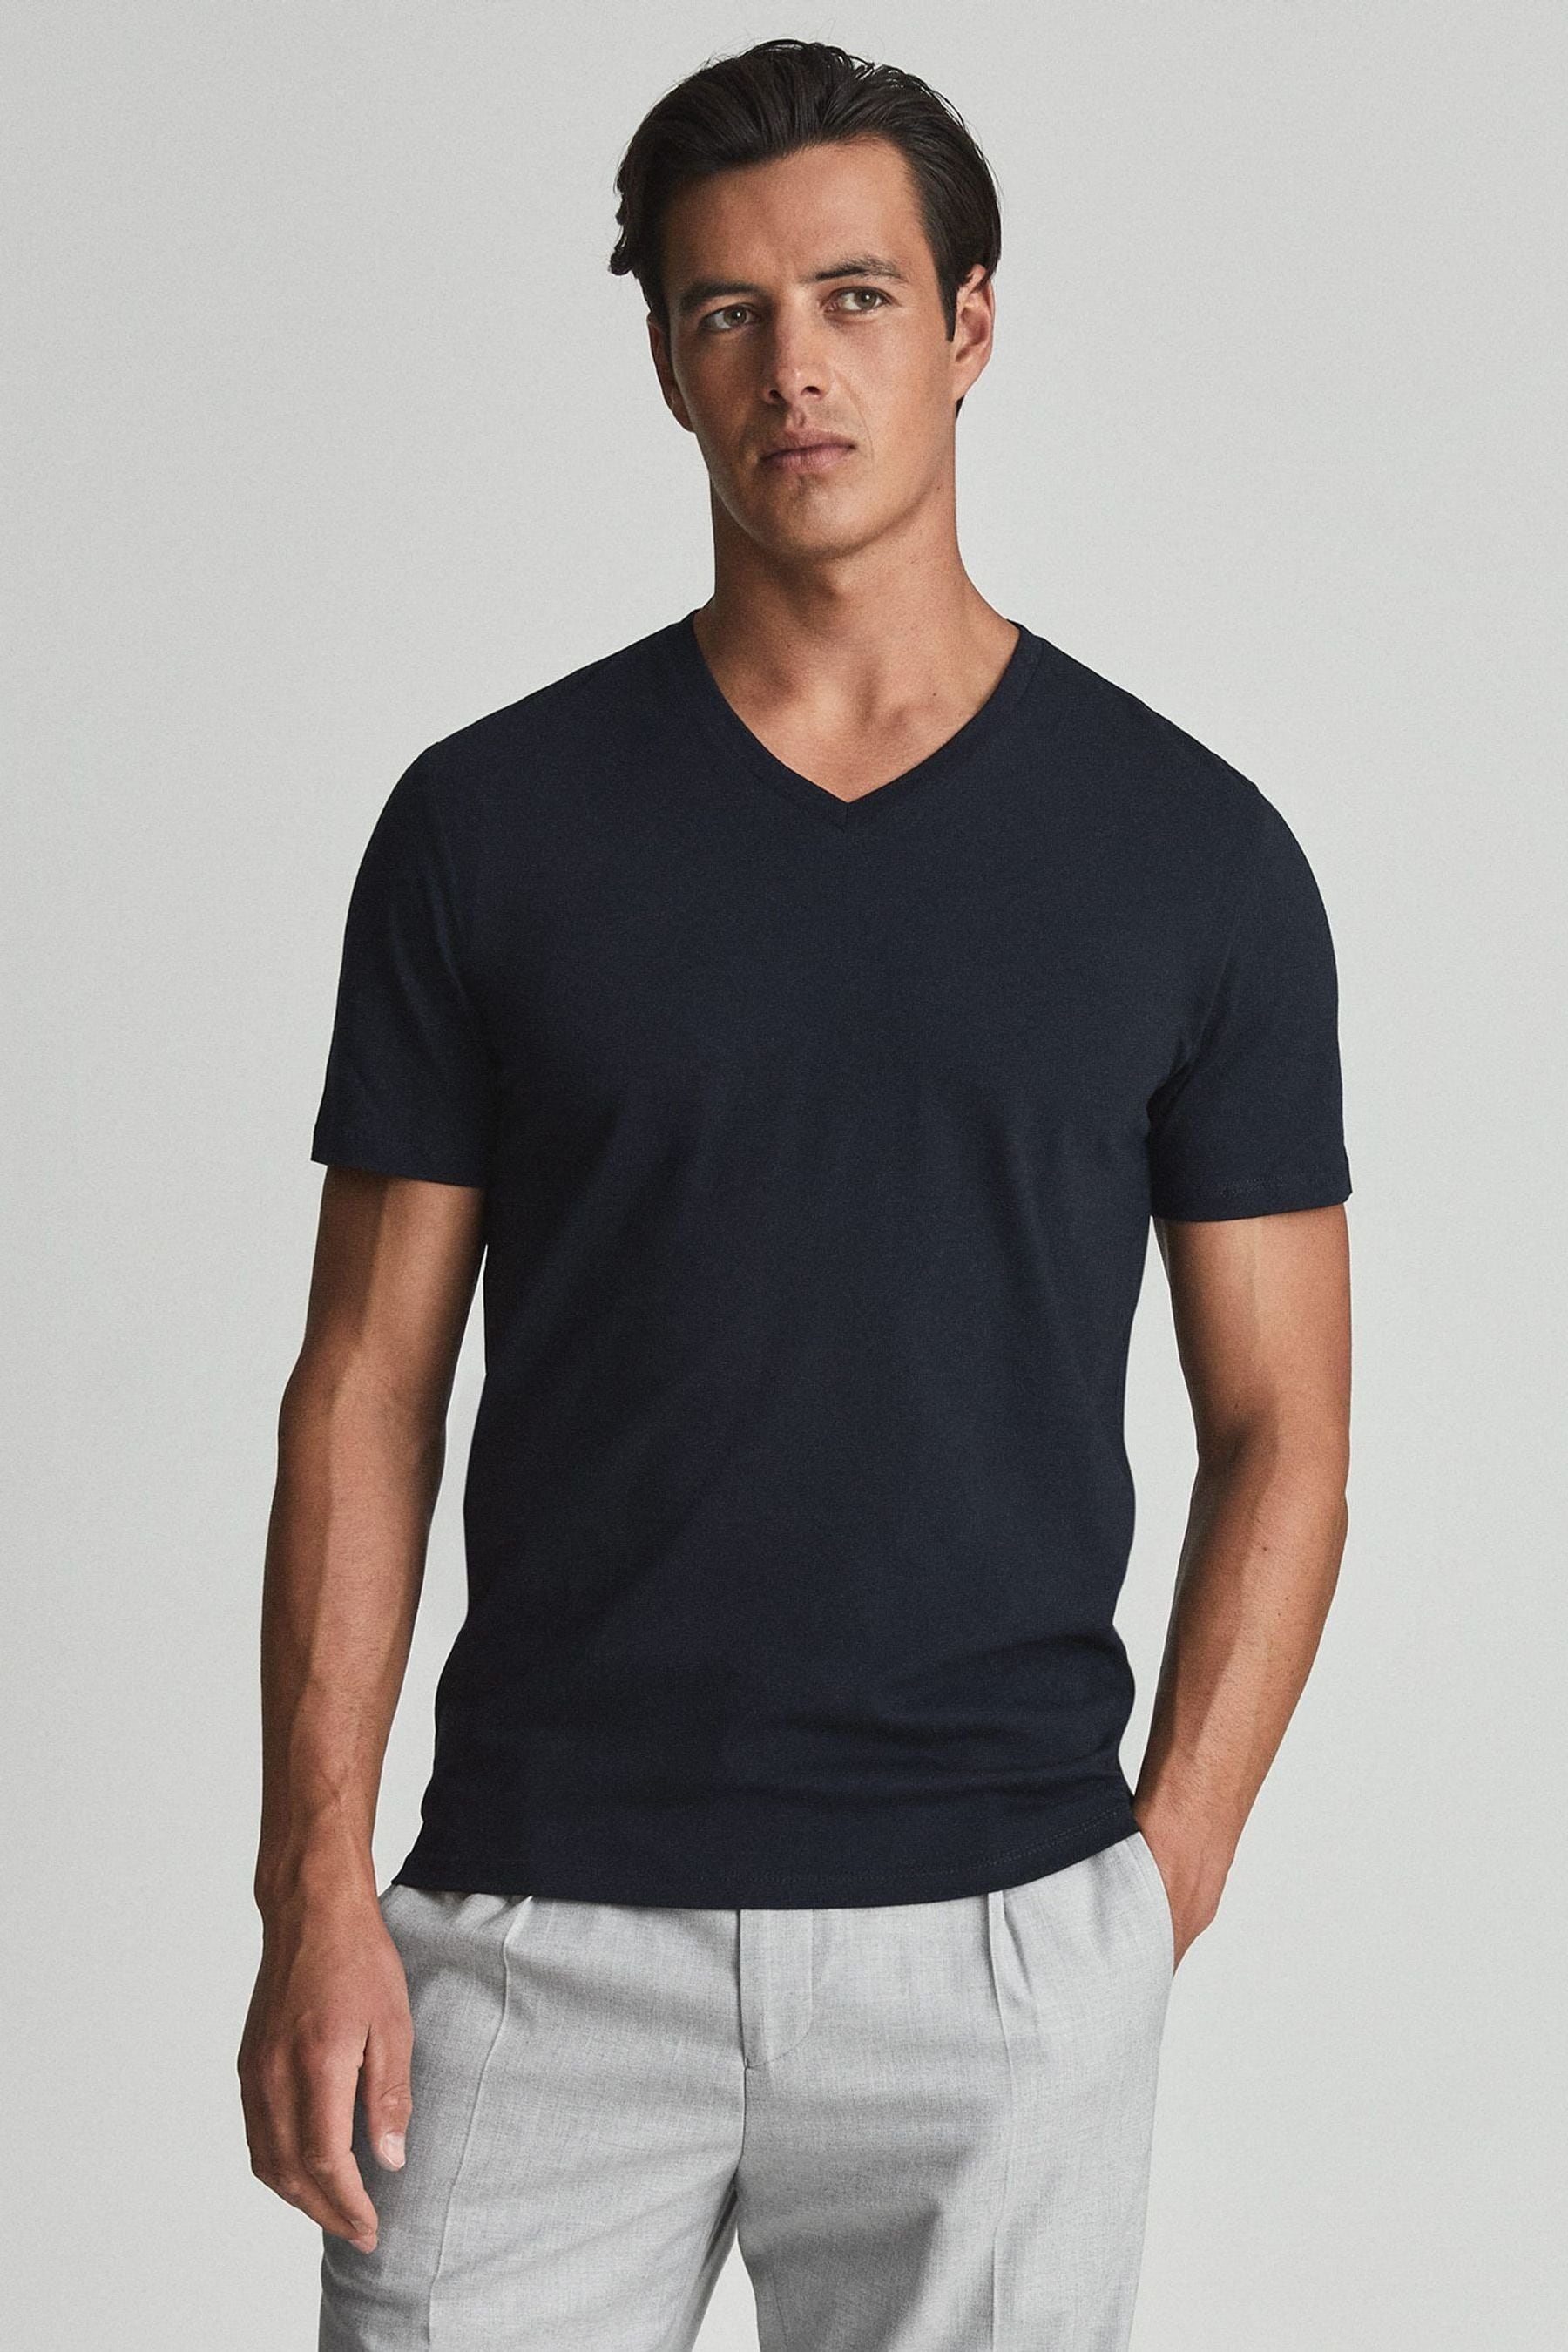 Reiss Dayton - Navy Cotton V-neck T-shirt, L